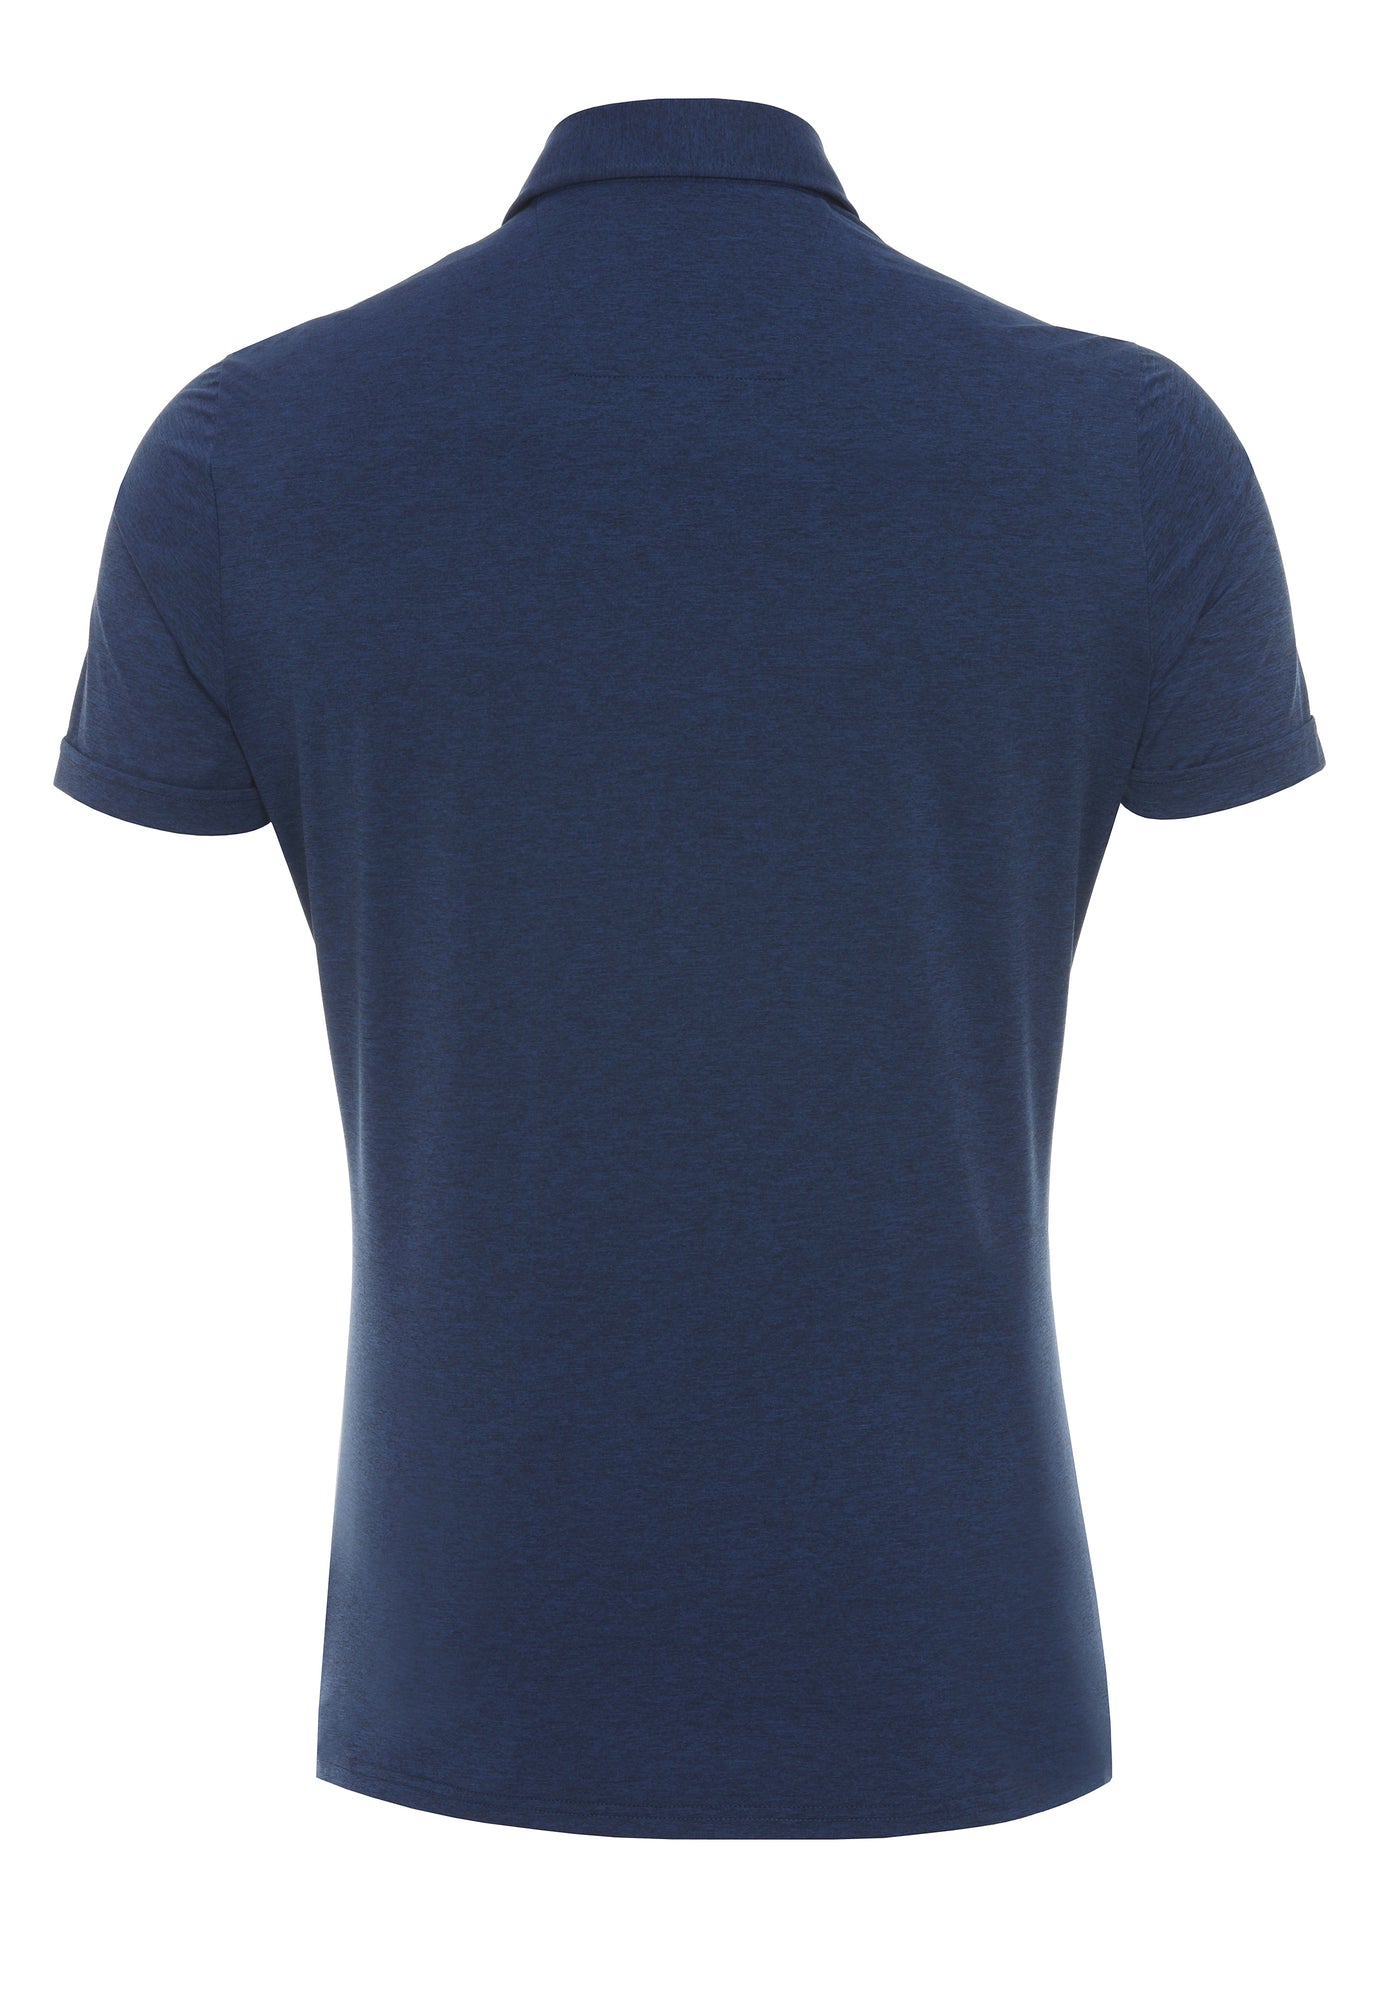 3393-92930 - Functional Polo Knopf slim fit - blau - pureshirt